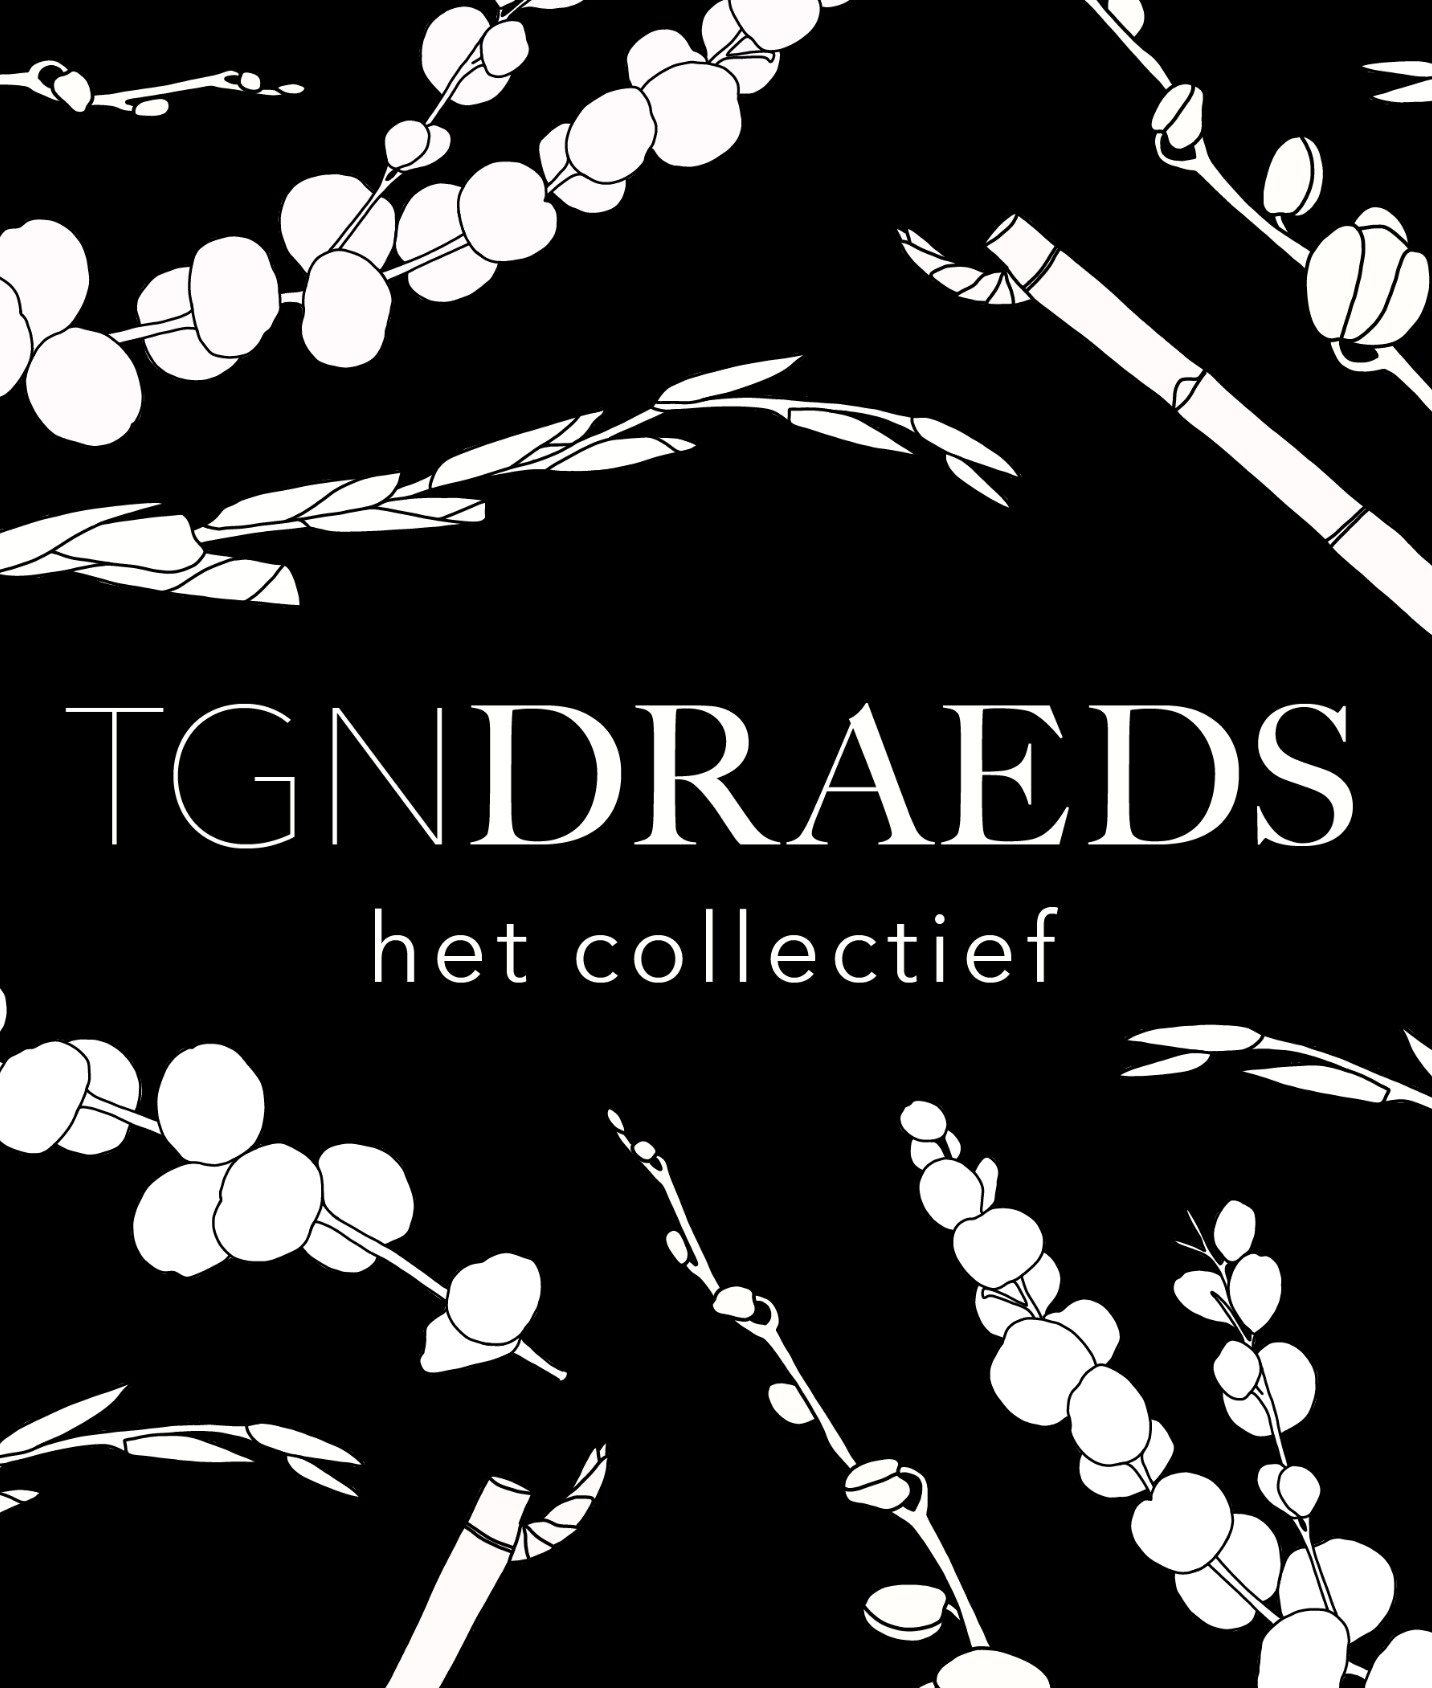 TGN-DRAEDS